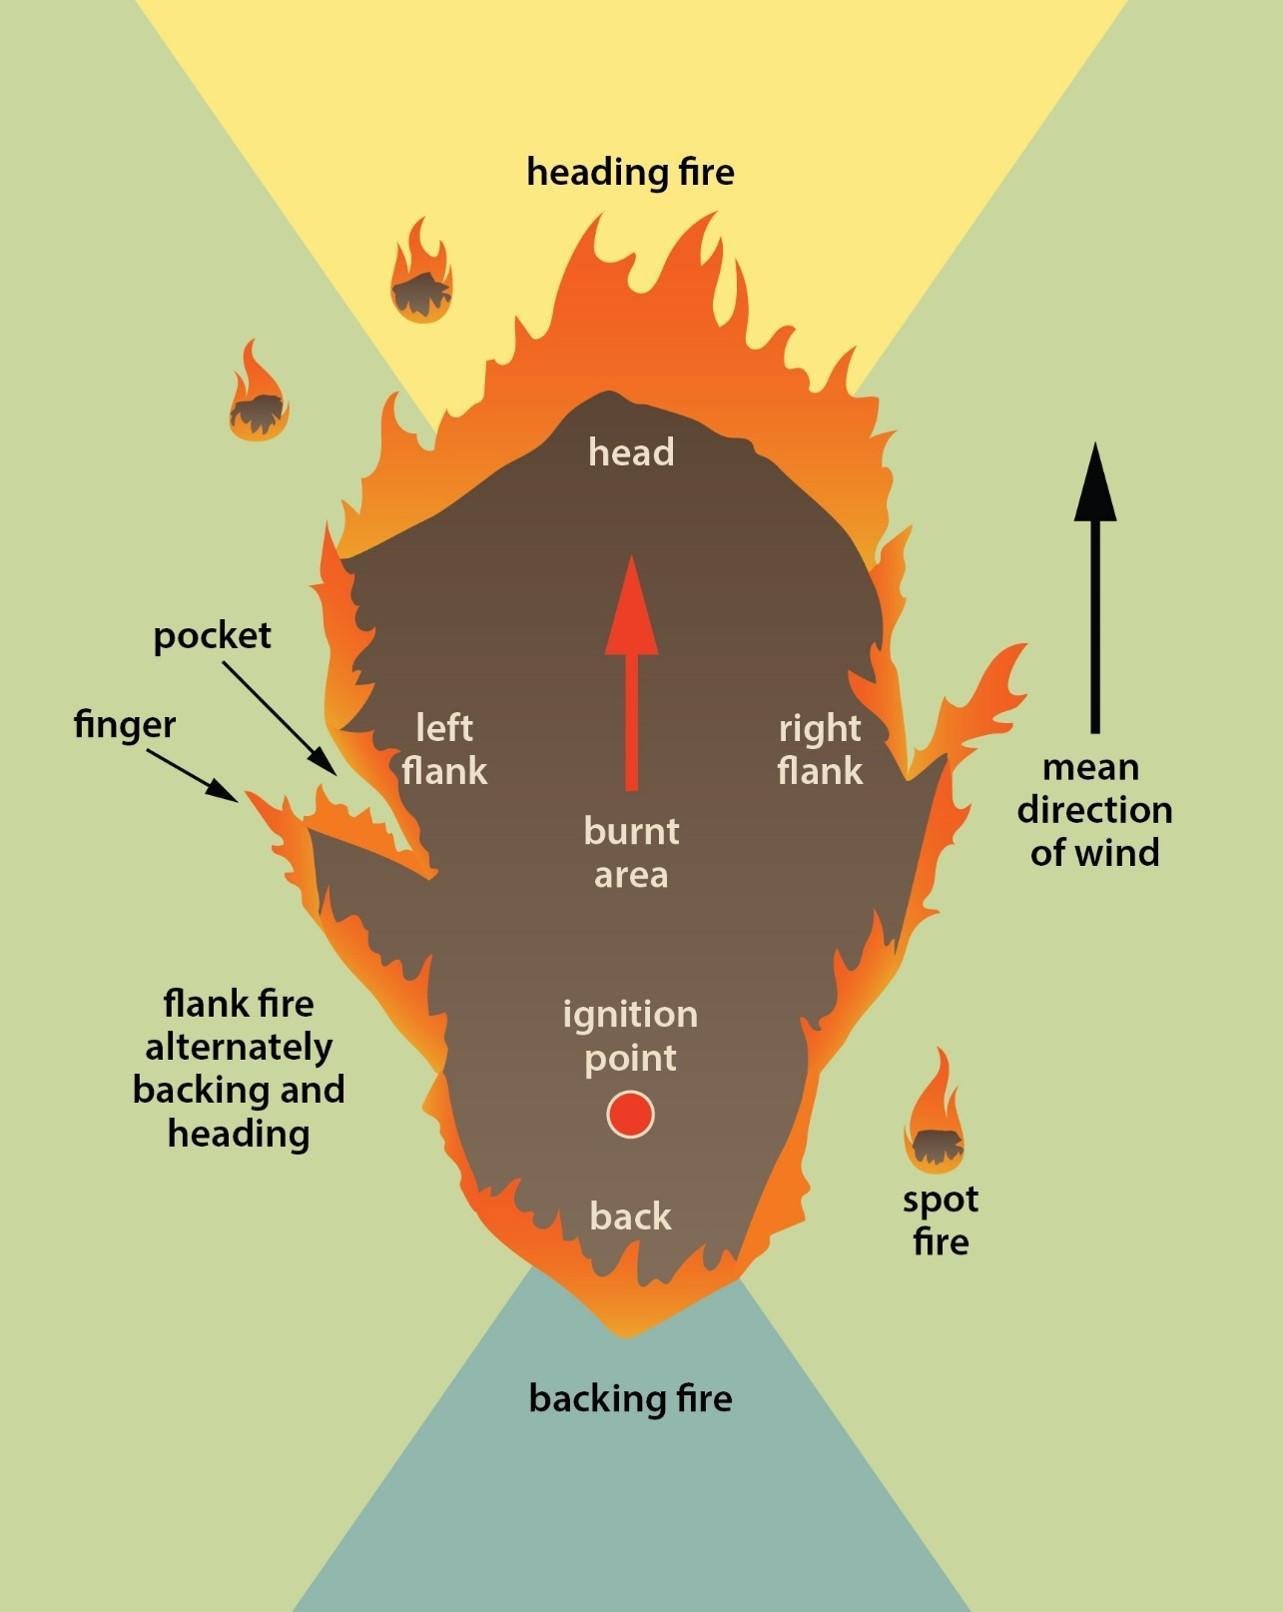 Description of parts of a fire.